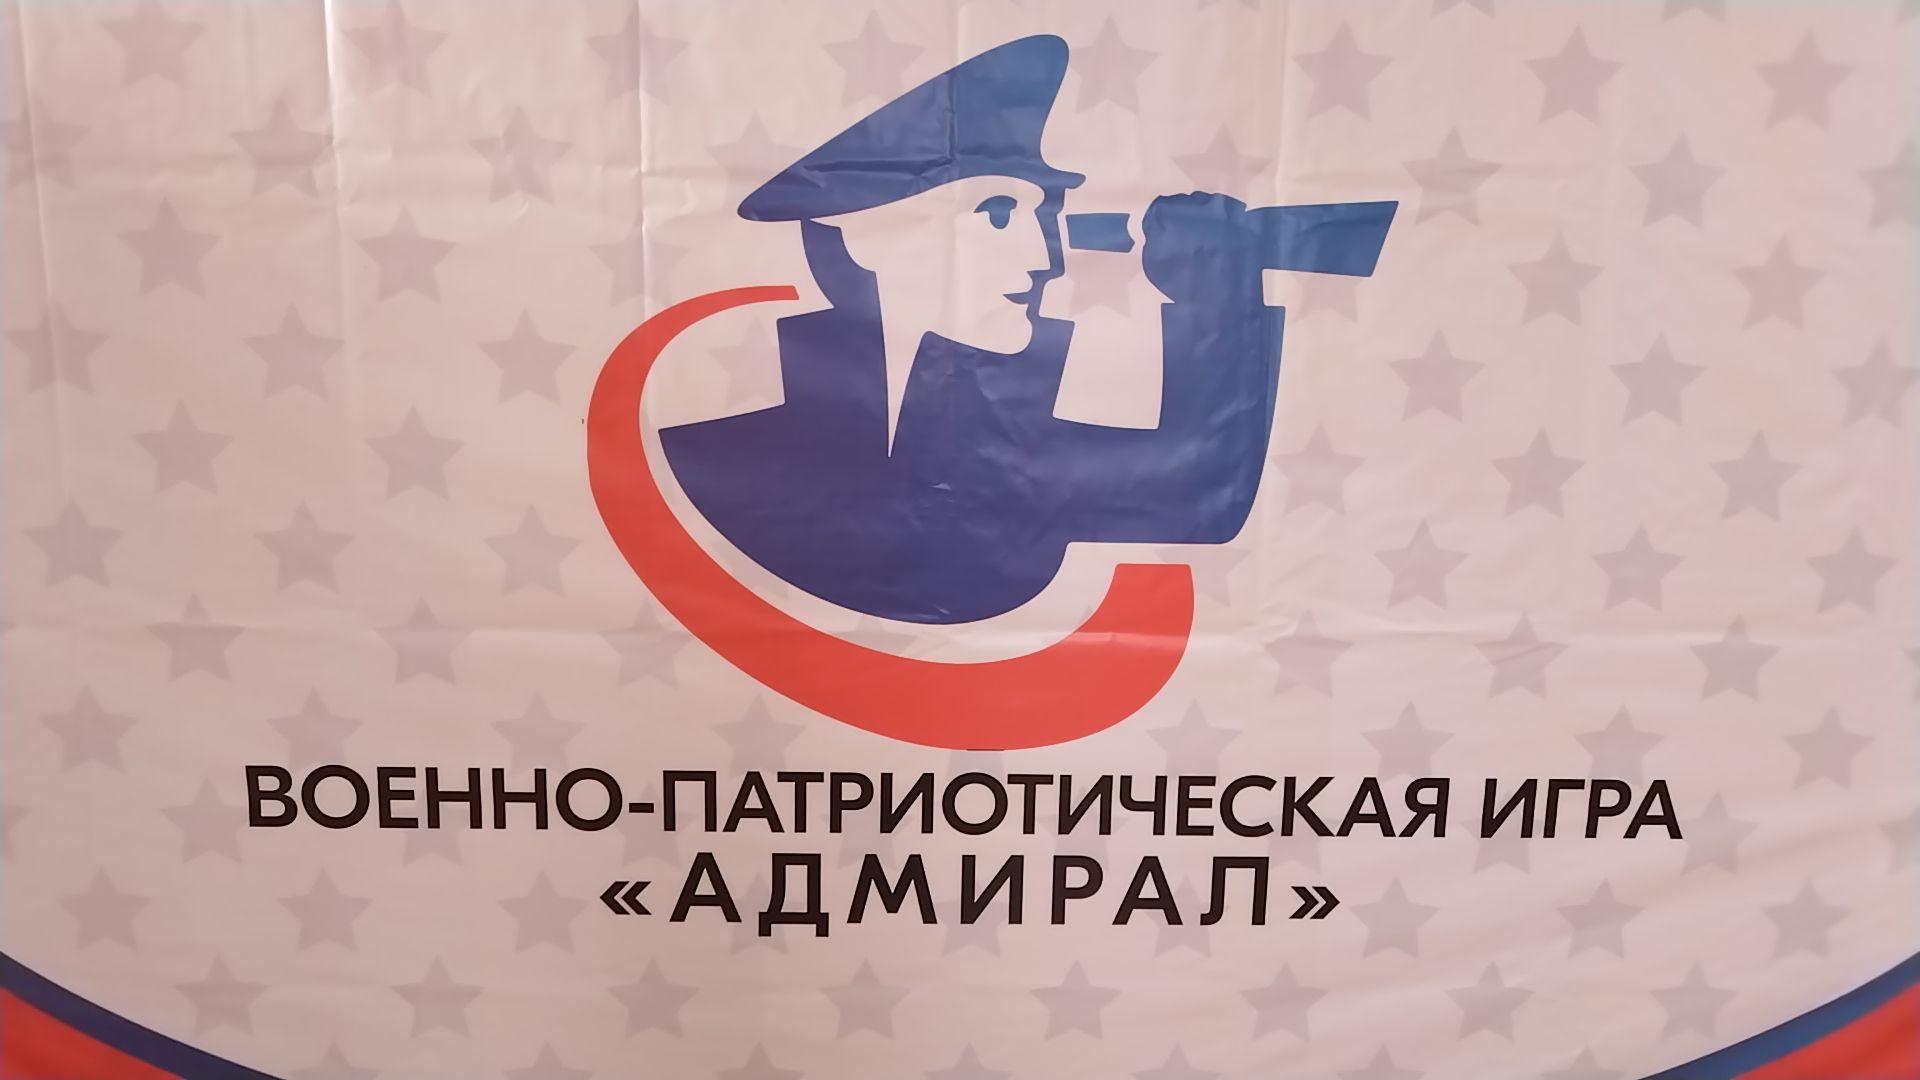 Лениногорскида мәктәп укучылары арасында «Адмирал» хәрби-патриотик уен үтте